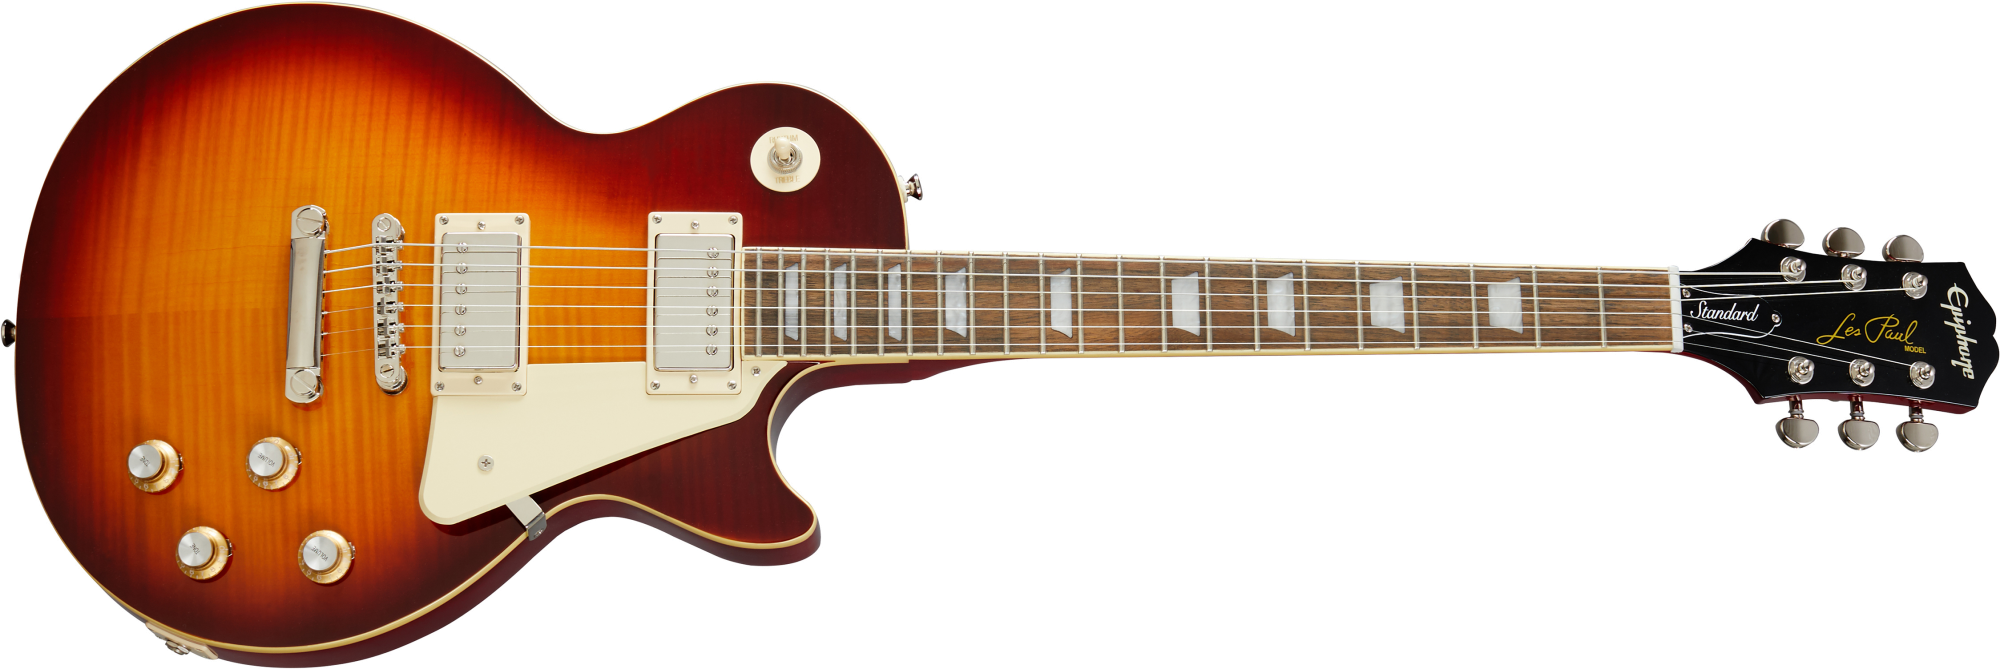 Se Epiphone Les Paul Standard '60s El-guitar (Iced Tea) hos Drum City